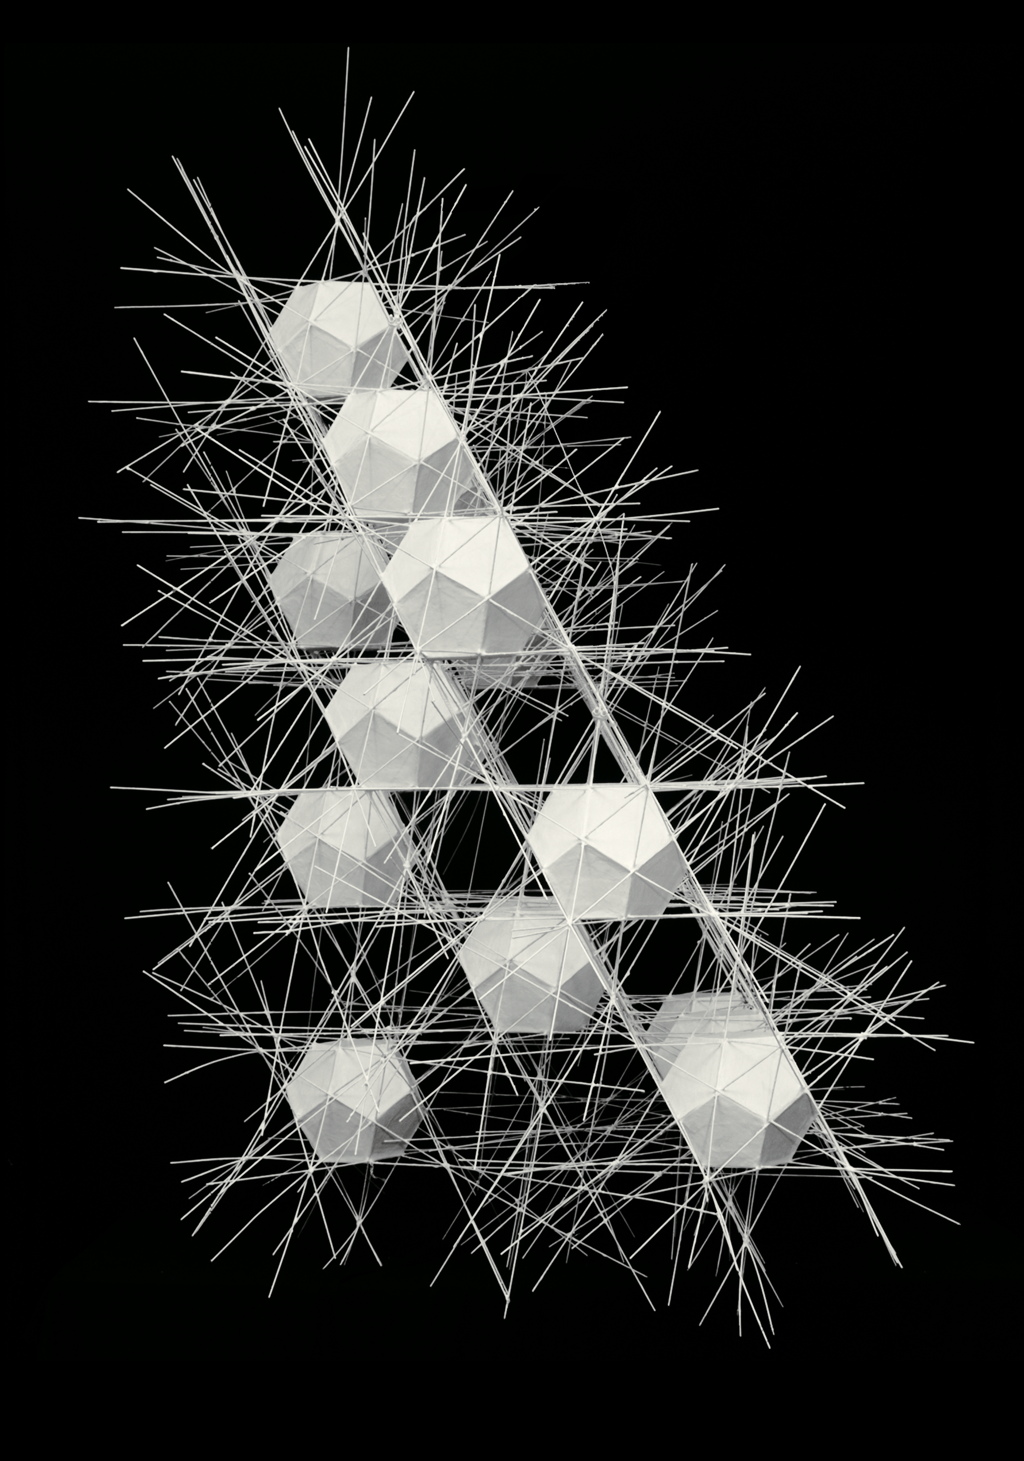 Werk - Polyhedral Net Structure #2 - MNK_01564_01531_caris_polyhedral-net-structure_002.jpg